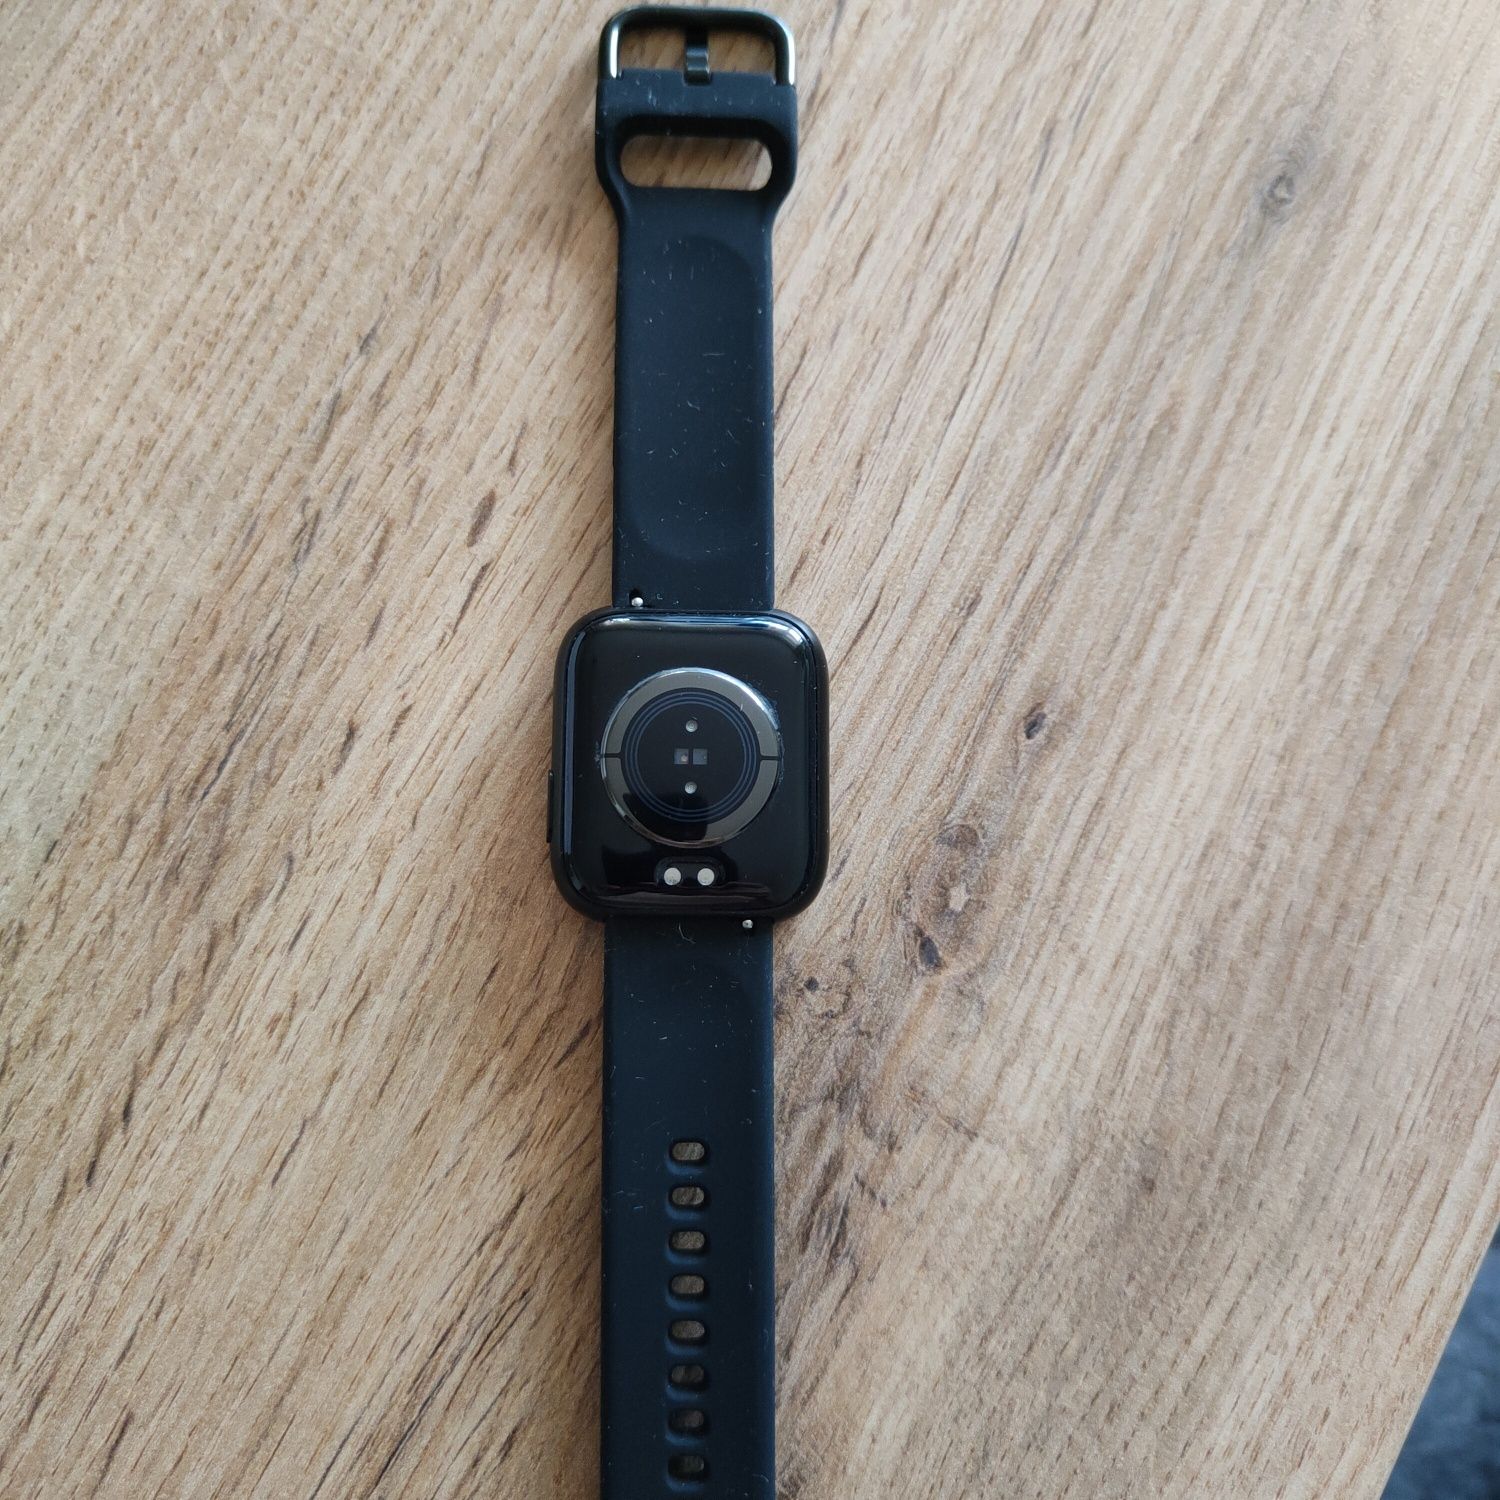 Smartwatch nowy, wszystko co daje producent